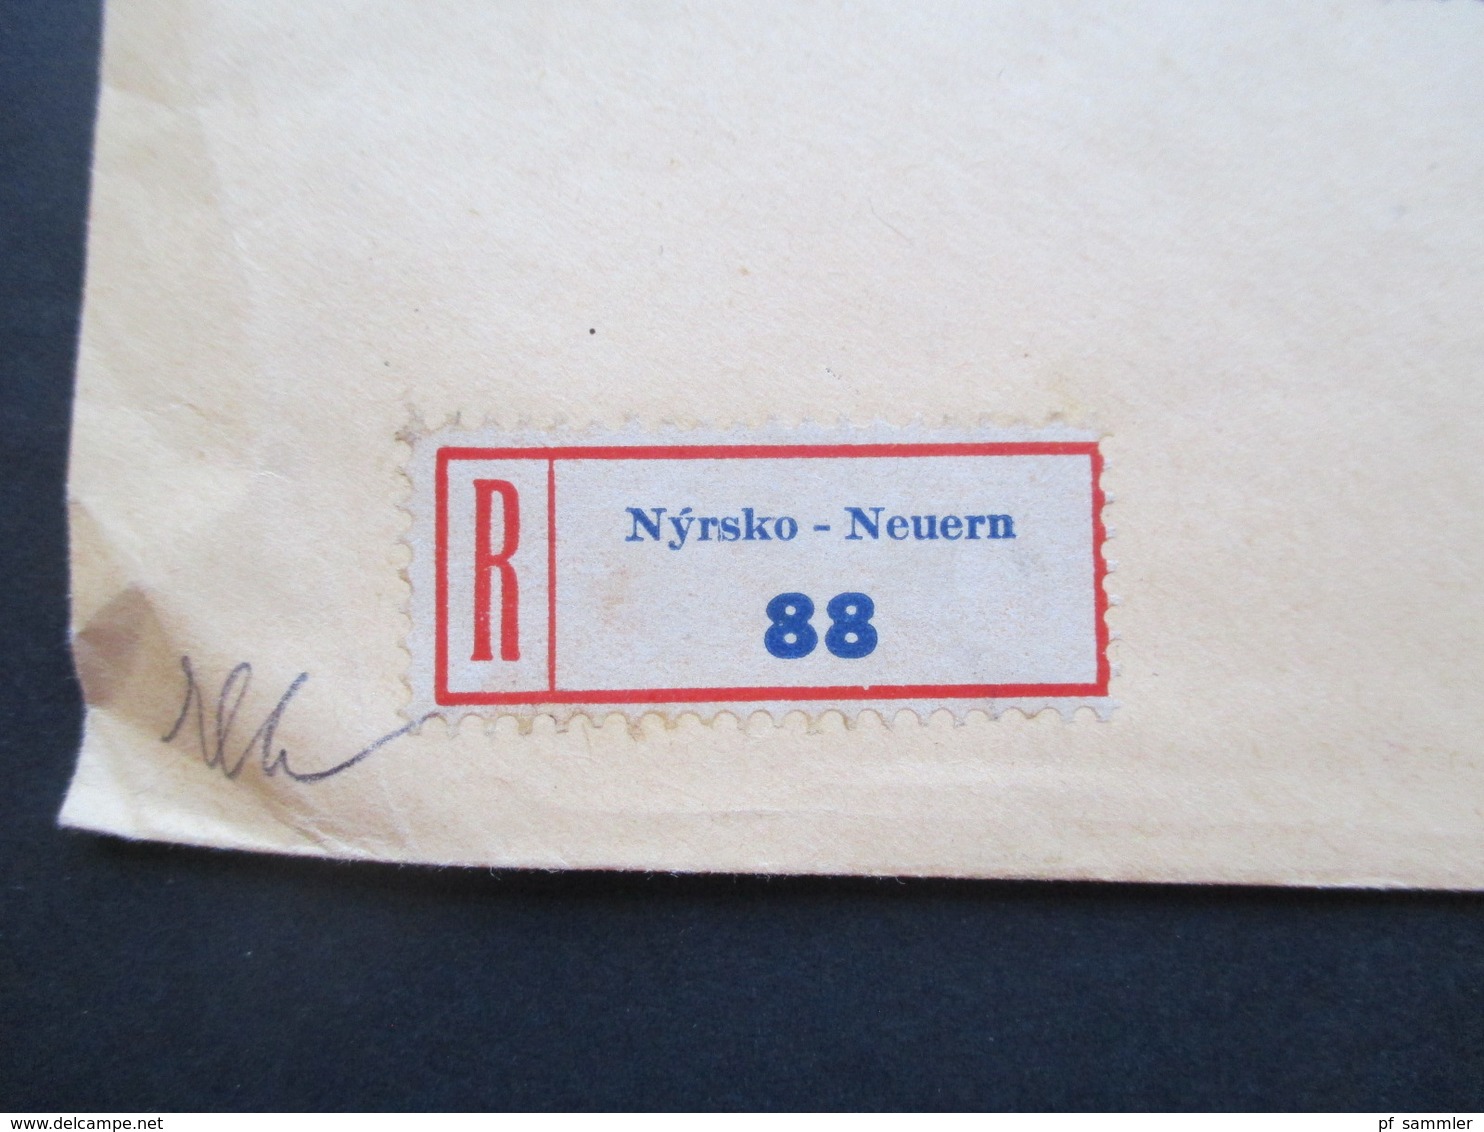 CSSR / Sudetenland 1934 Beleg Advokat Leopold Goldbach Neuern Zweisprachiger Stempel Nyrsko / Neuern Einschreiben!! - Covers & Documents